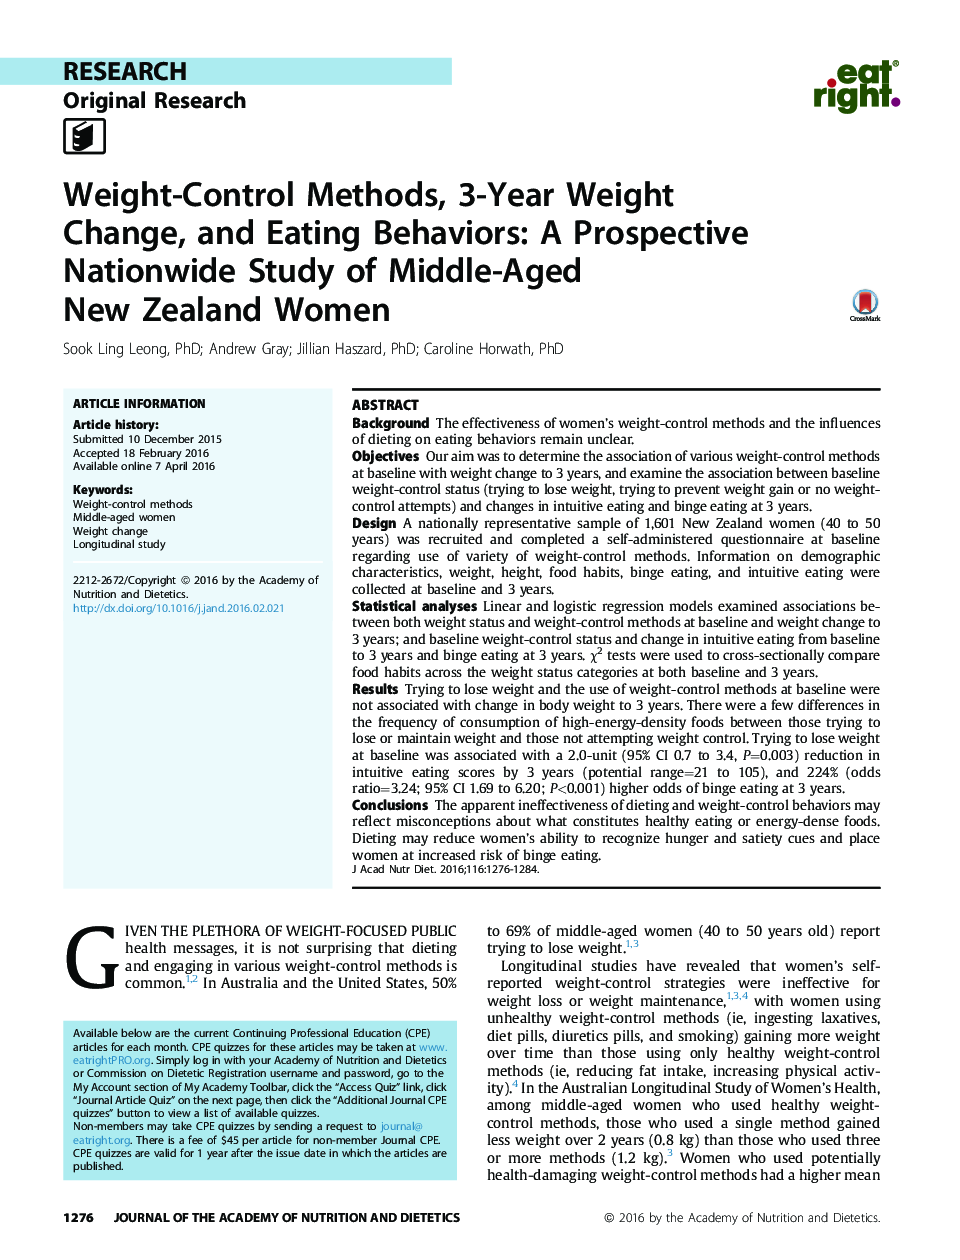 روش های کنترل وزن، تغییر وزن در 3 سال و رفتارها و عادات غذایی: مطالعه در سطح ملی آینده نگر از زنان میانسال نیوزیلند 